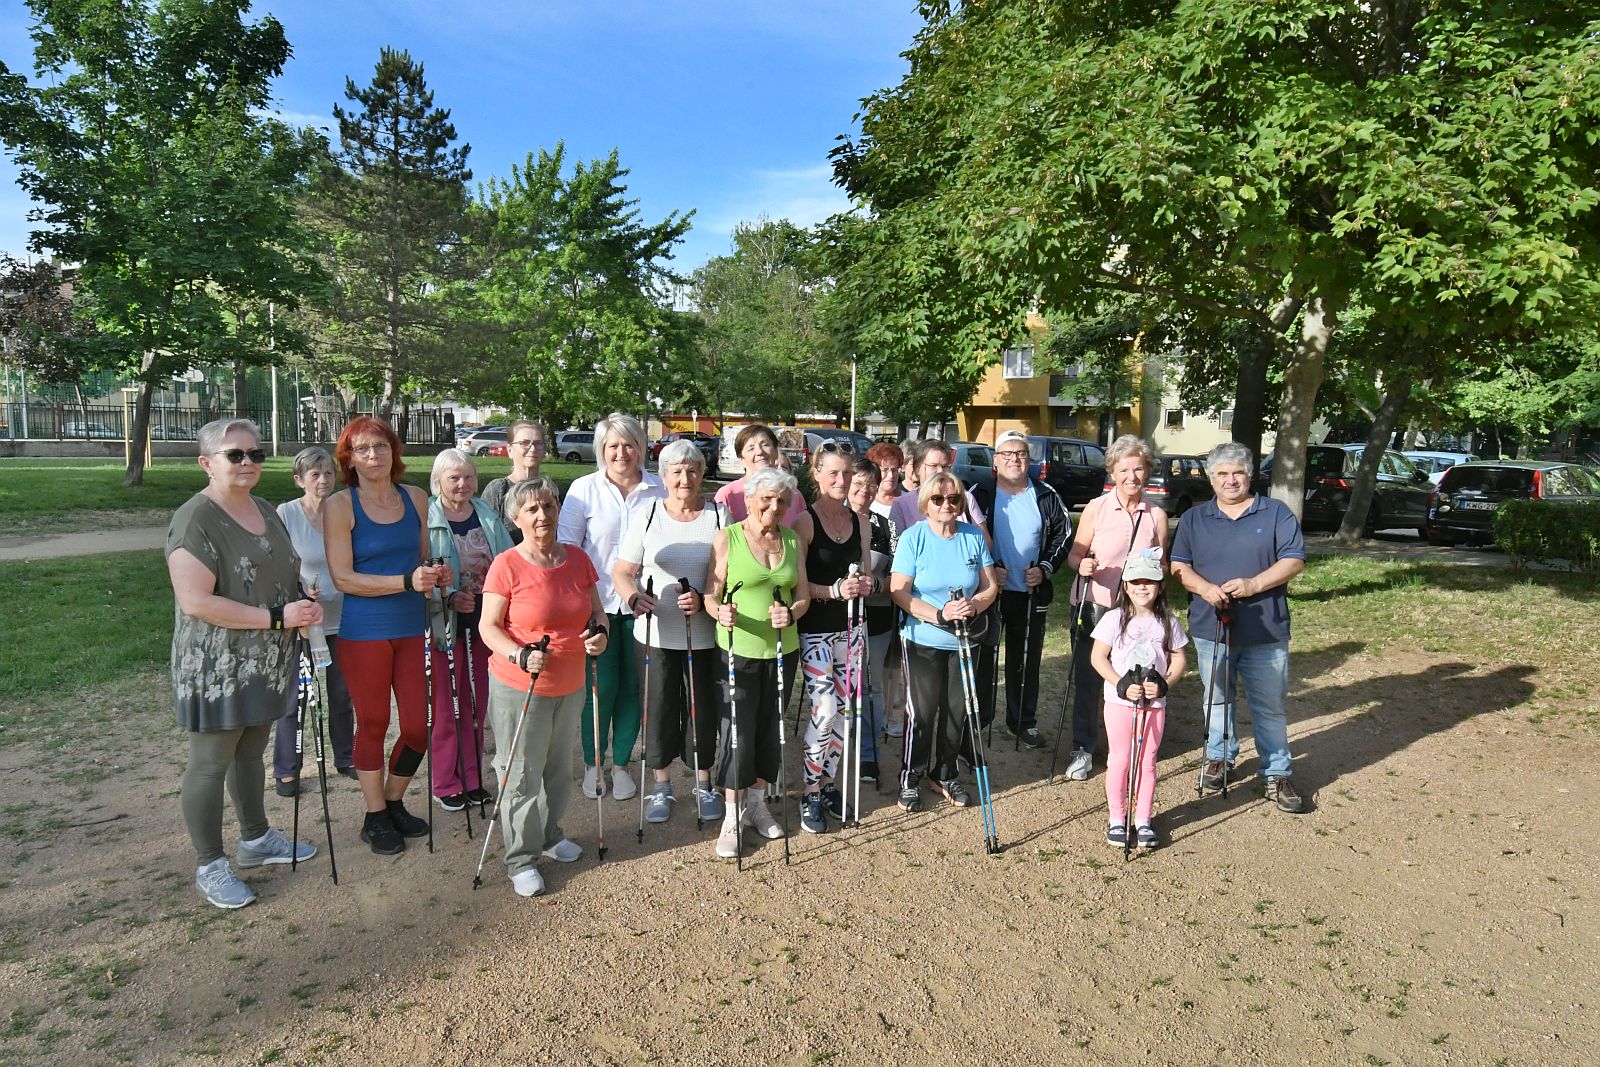 Ingyenes nordic walking foglalkozások Fehérváron - sikeres a program a Széna téren is